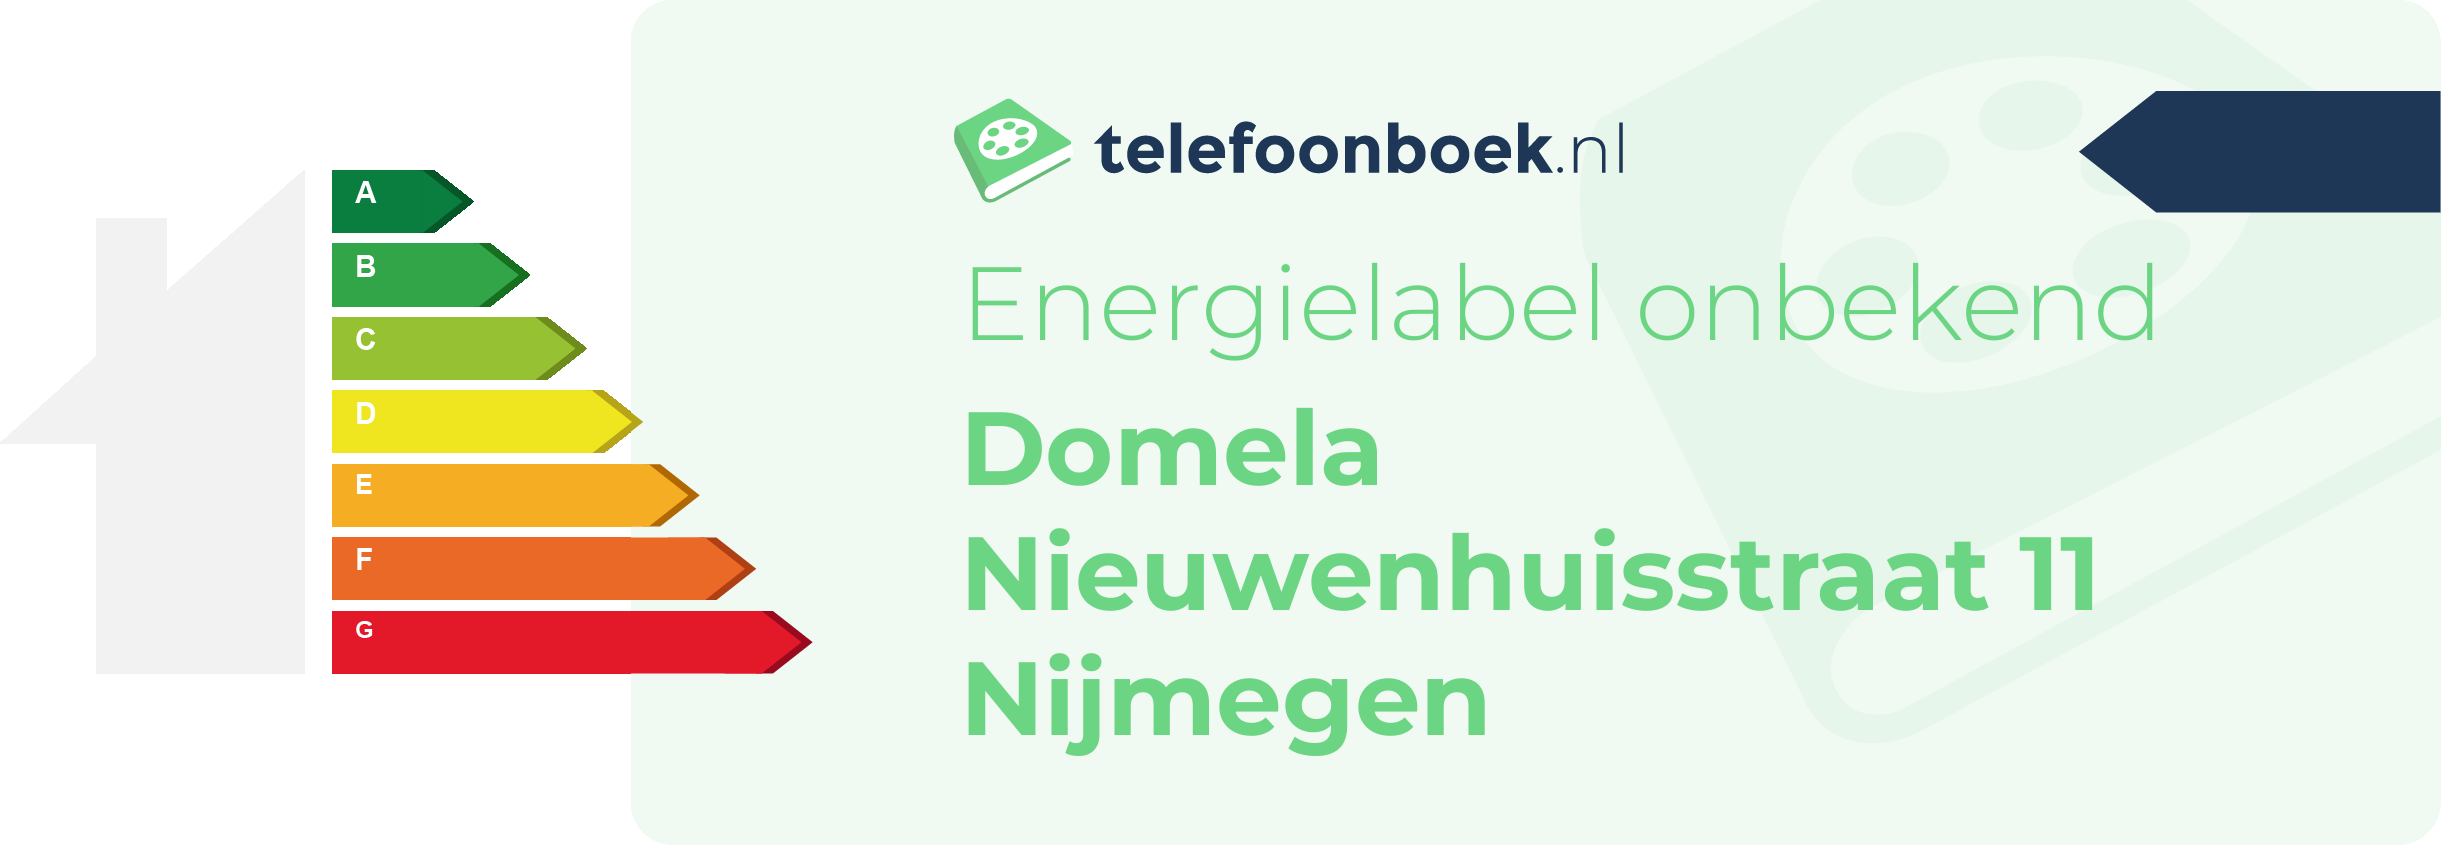 Energielabel Domela Nieuwenhuisstraat 11 Nijmegen